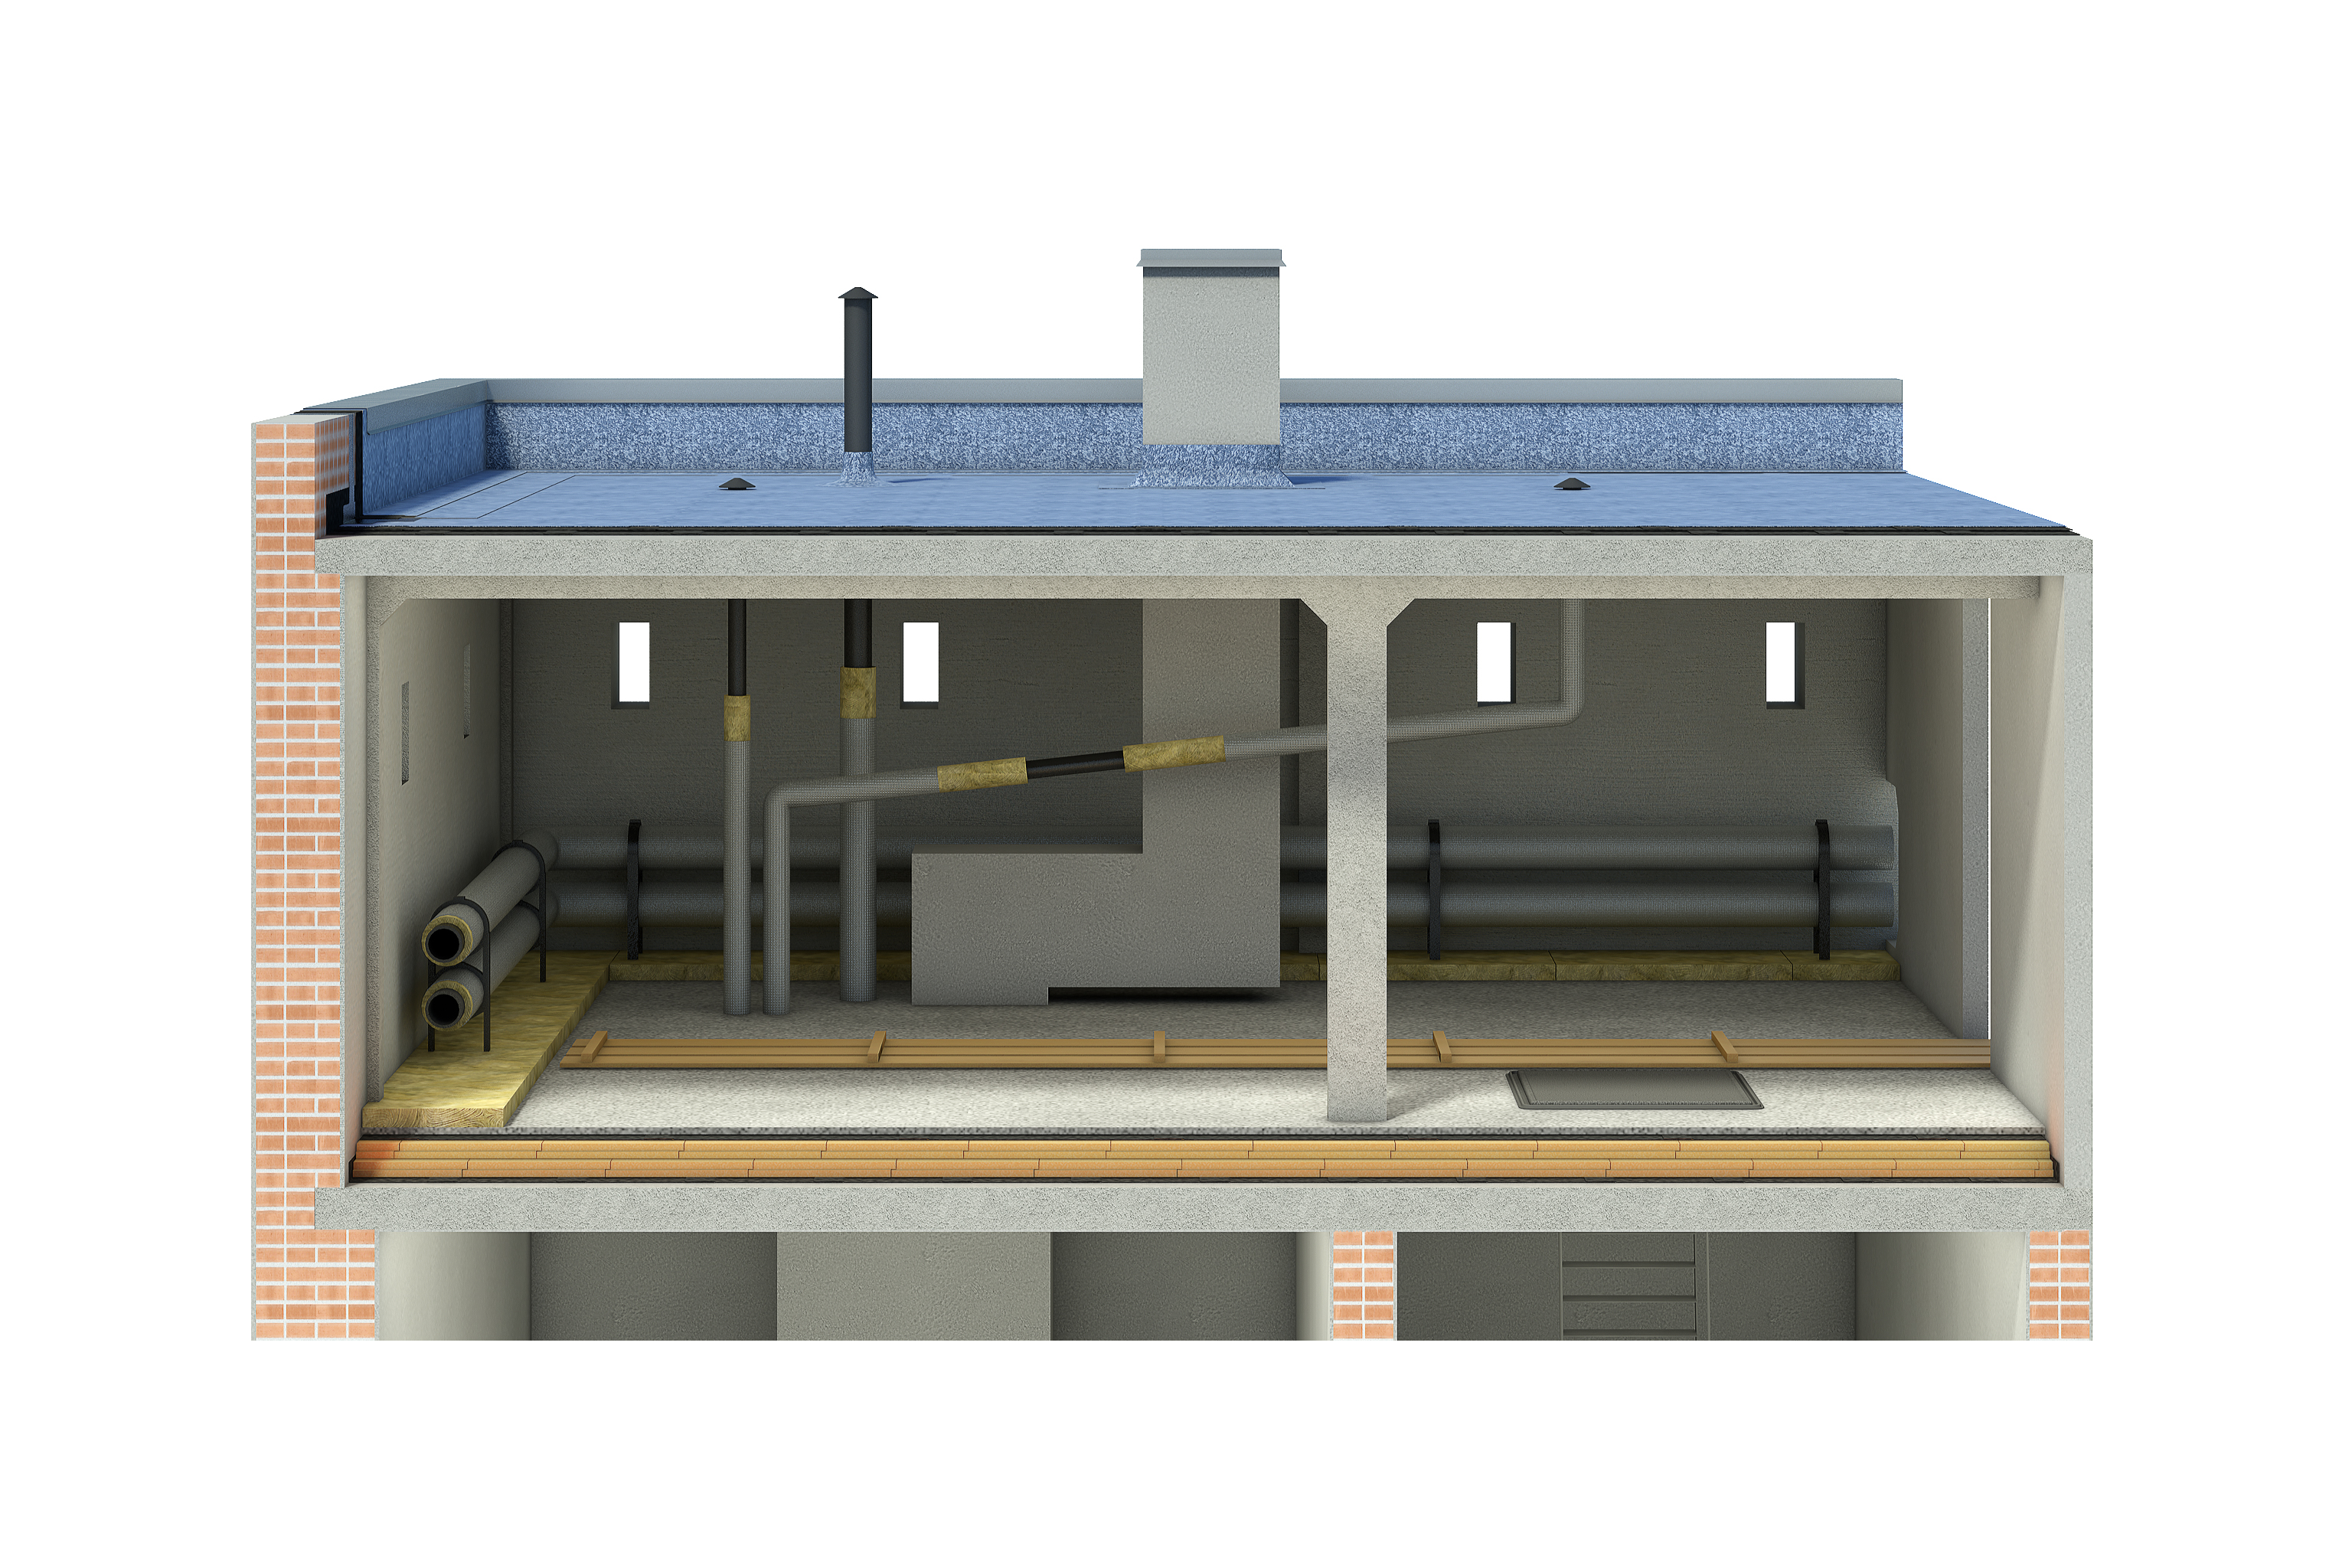 Капитальный ремонт чердачных крыш многоквартирных домов. Правила проектирования